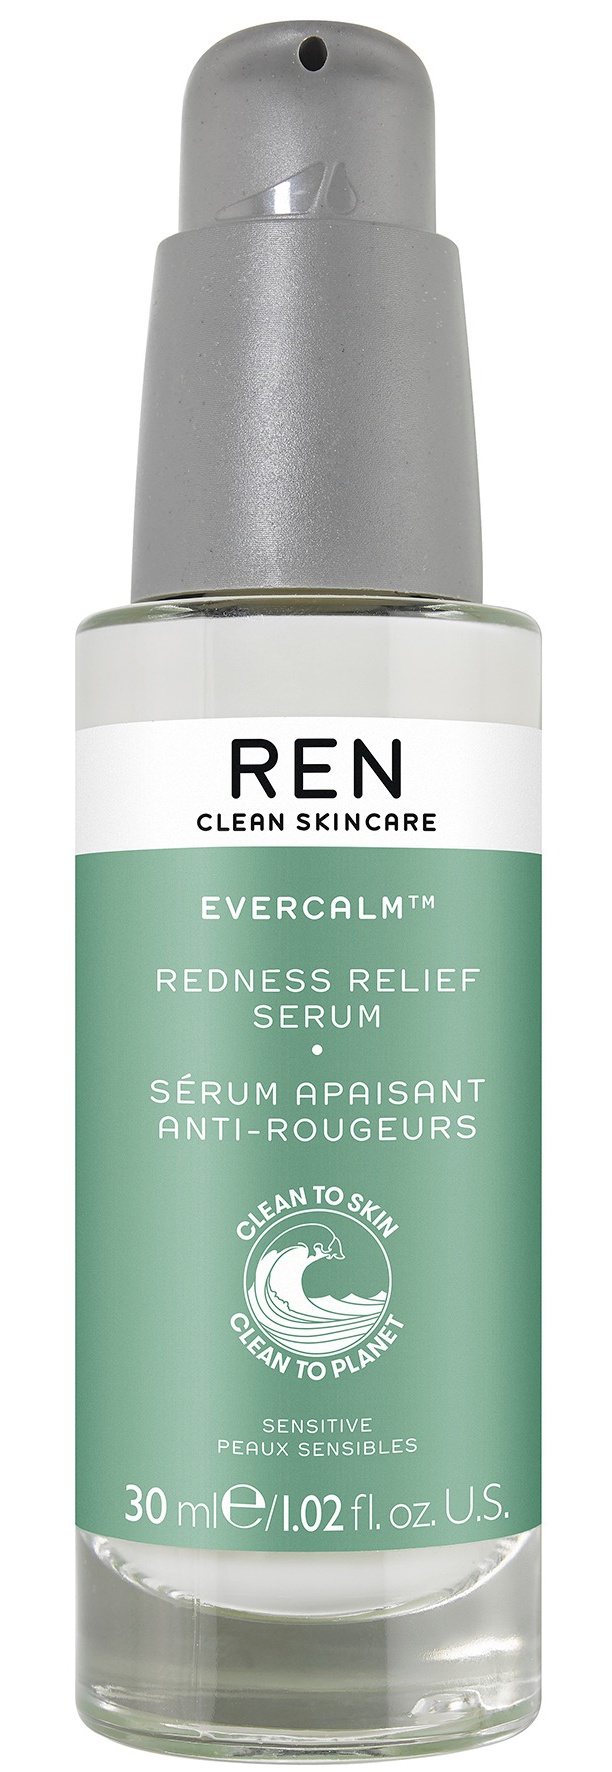 REN Evercalm™ Redness Relief Serum